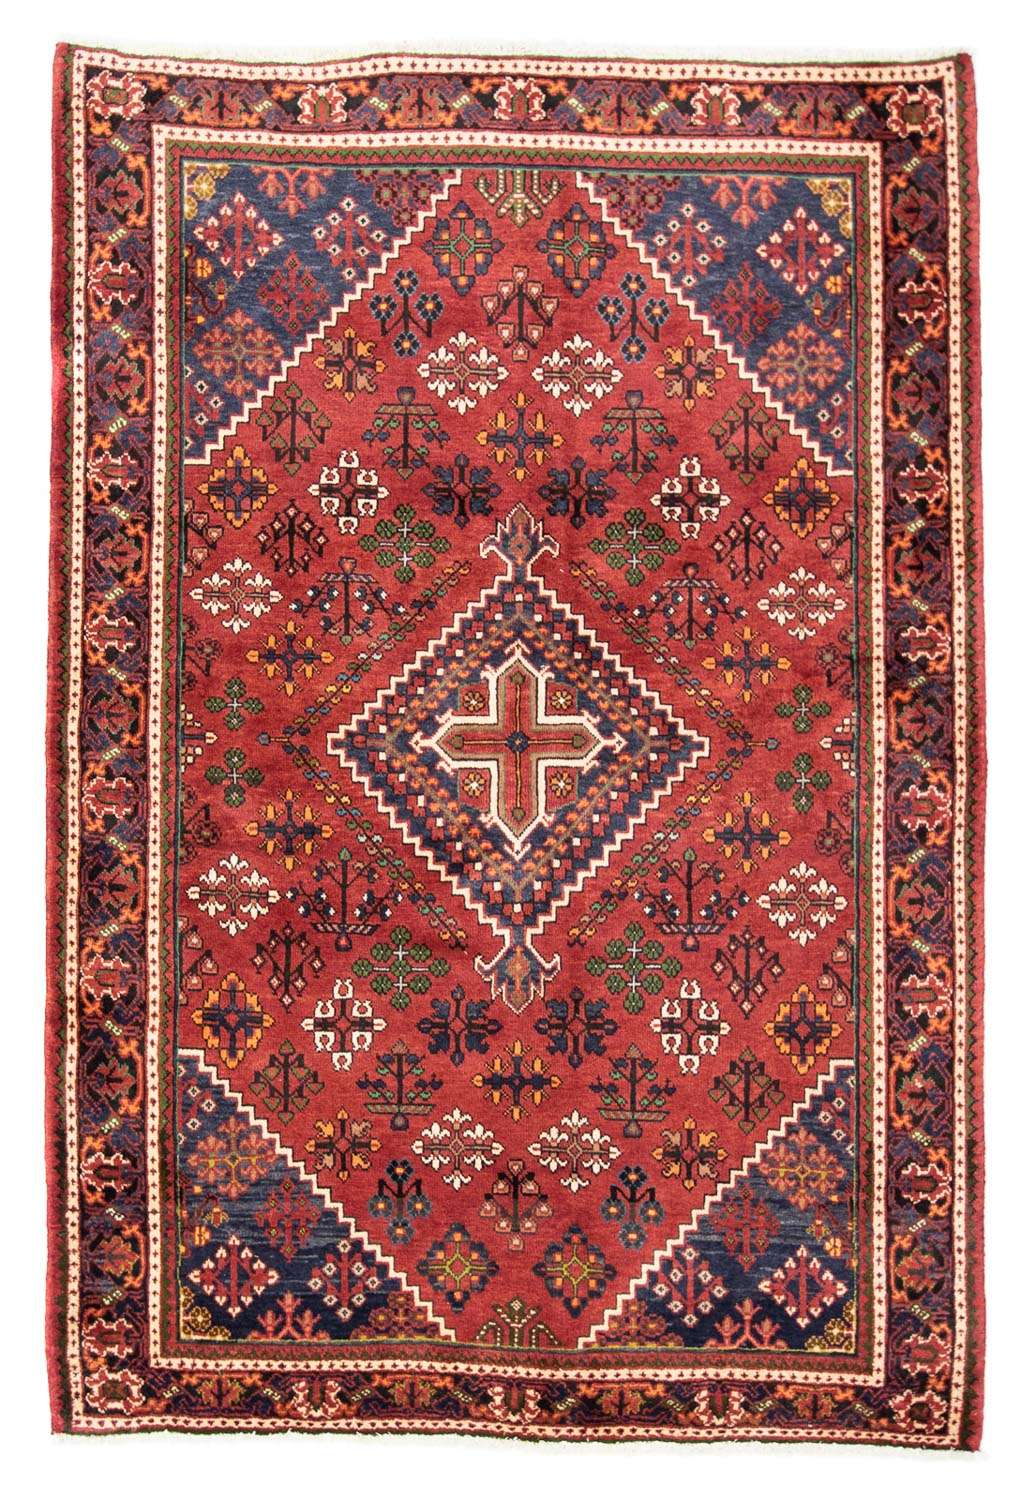 Tapis persan - Nomadic - 205 x 138 cm - rouge foncé